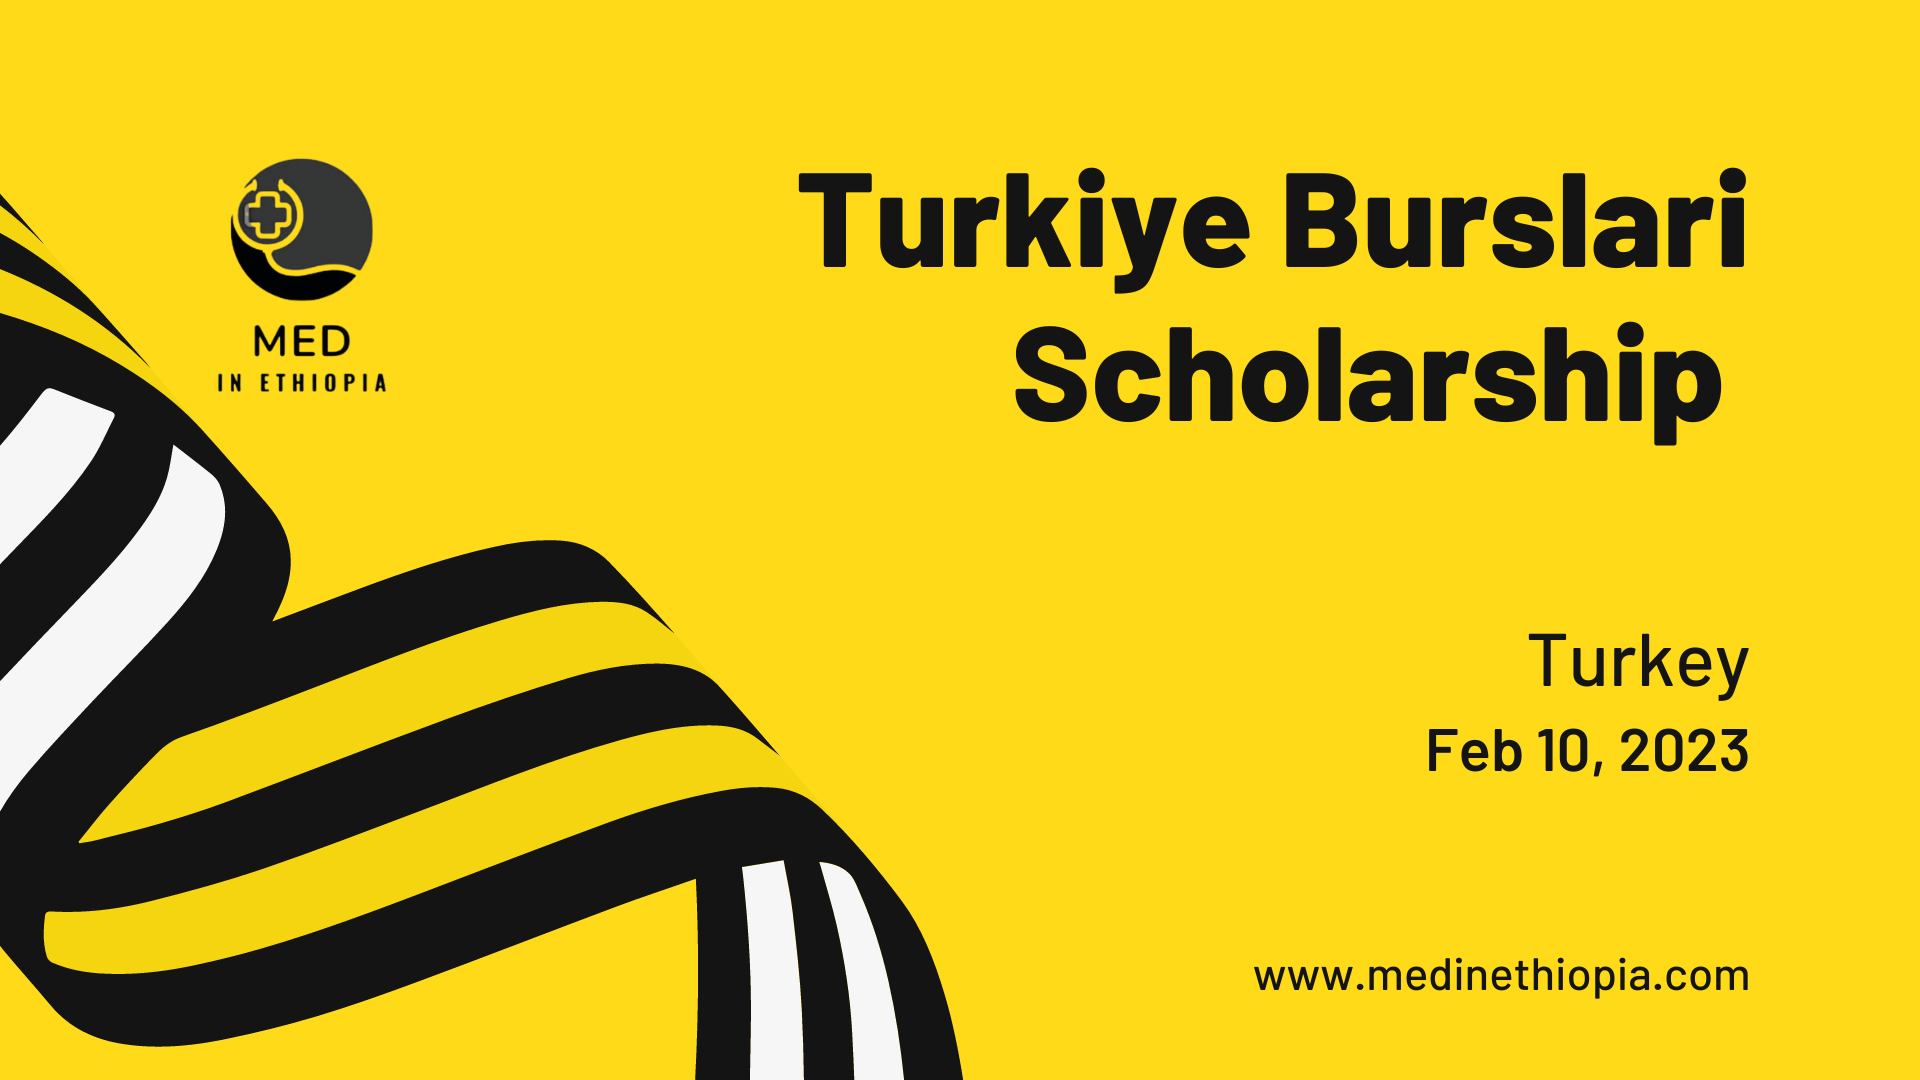 Turkiye Burslari Scholarship 2023